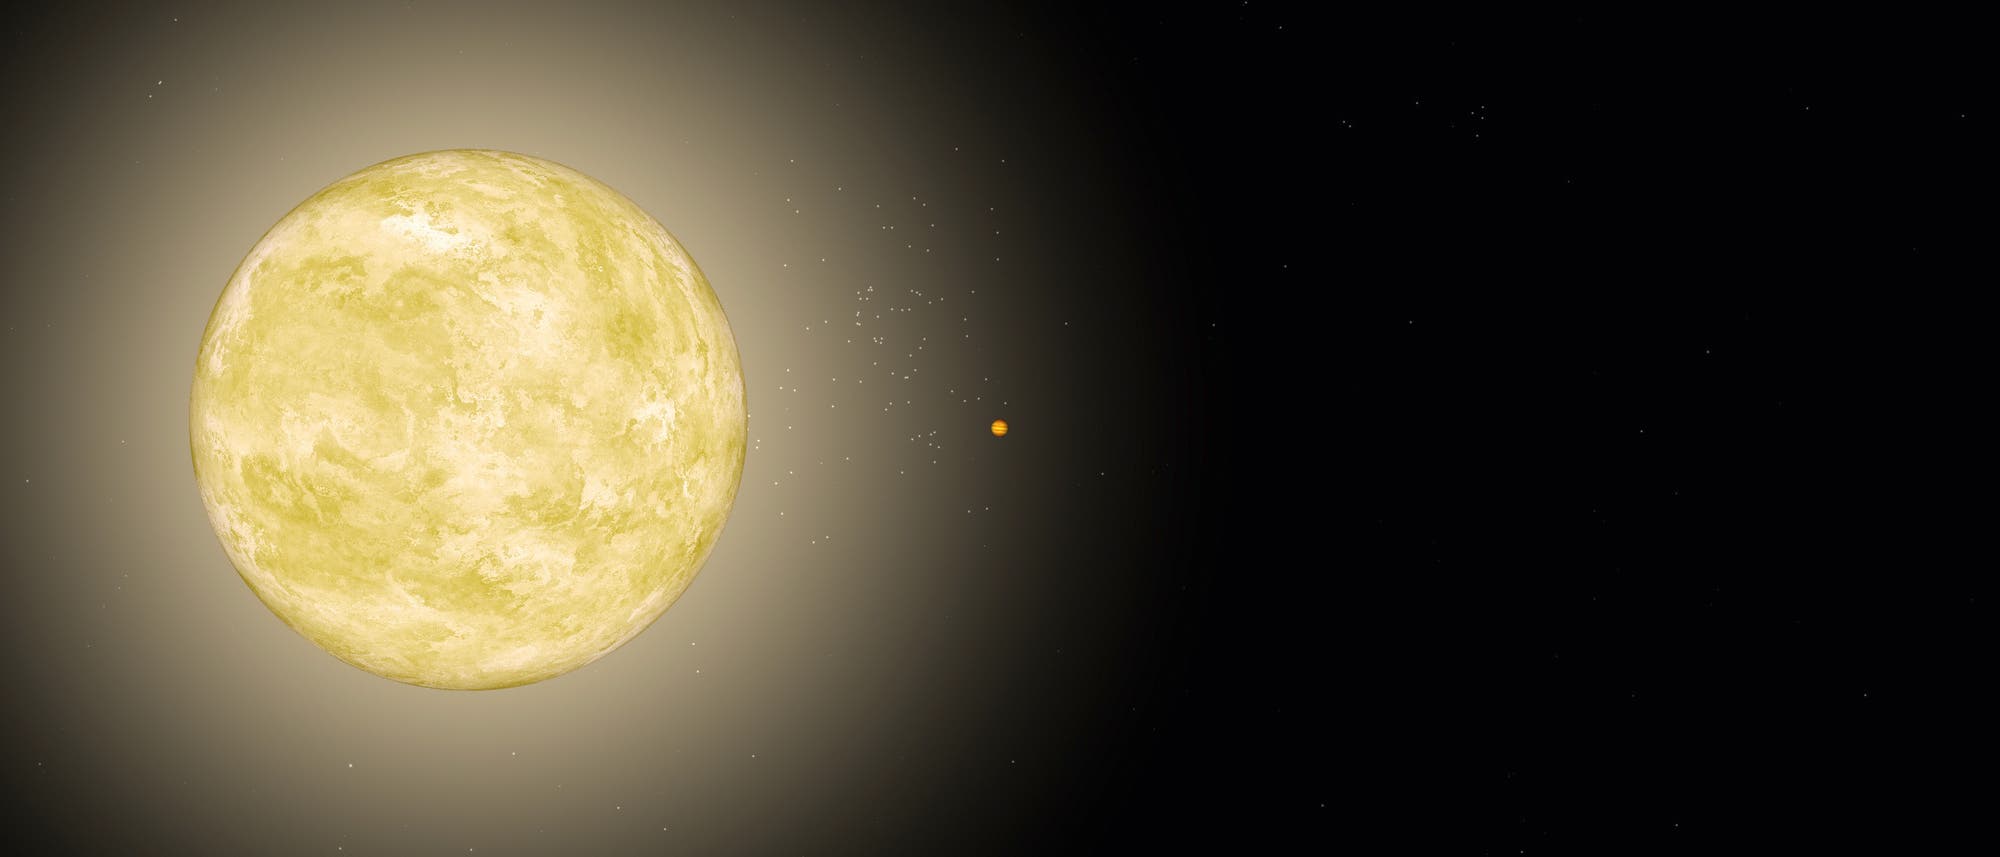 Der Gasriese HAT-P-2 b umläuft seinen Stern einmal alle 5,63 Tage auf einer stark elliptischen Umlaufbahn.